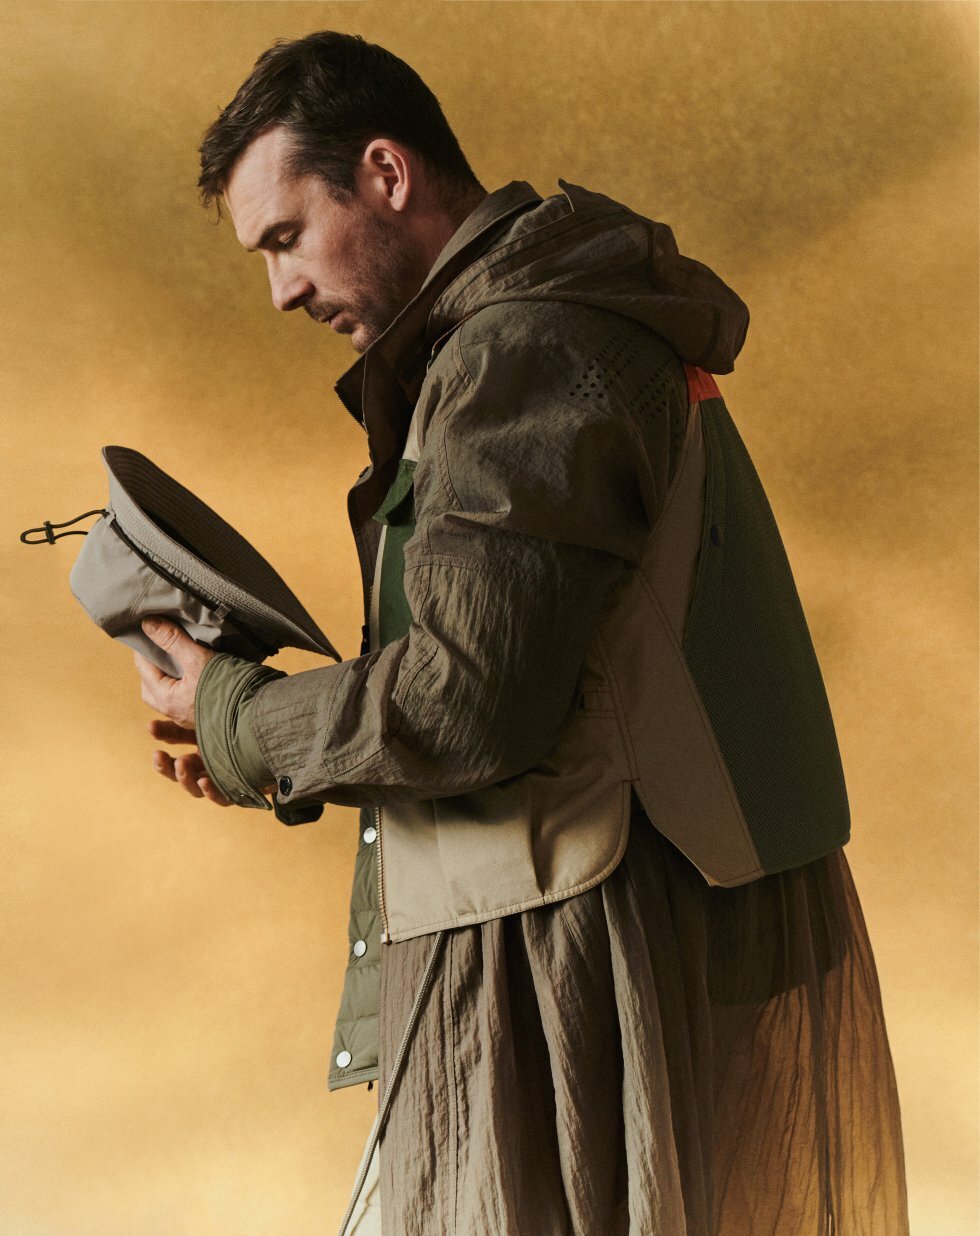 Skuespiller Barry Sloane i Desert-outfit - Fotograf: Daniel Benson - Fra gaming til gademode: Call of Duty-ikon bliver modemand i anderledes samarbejde fra CoD